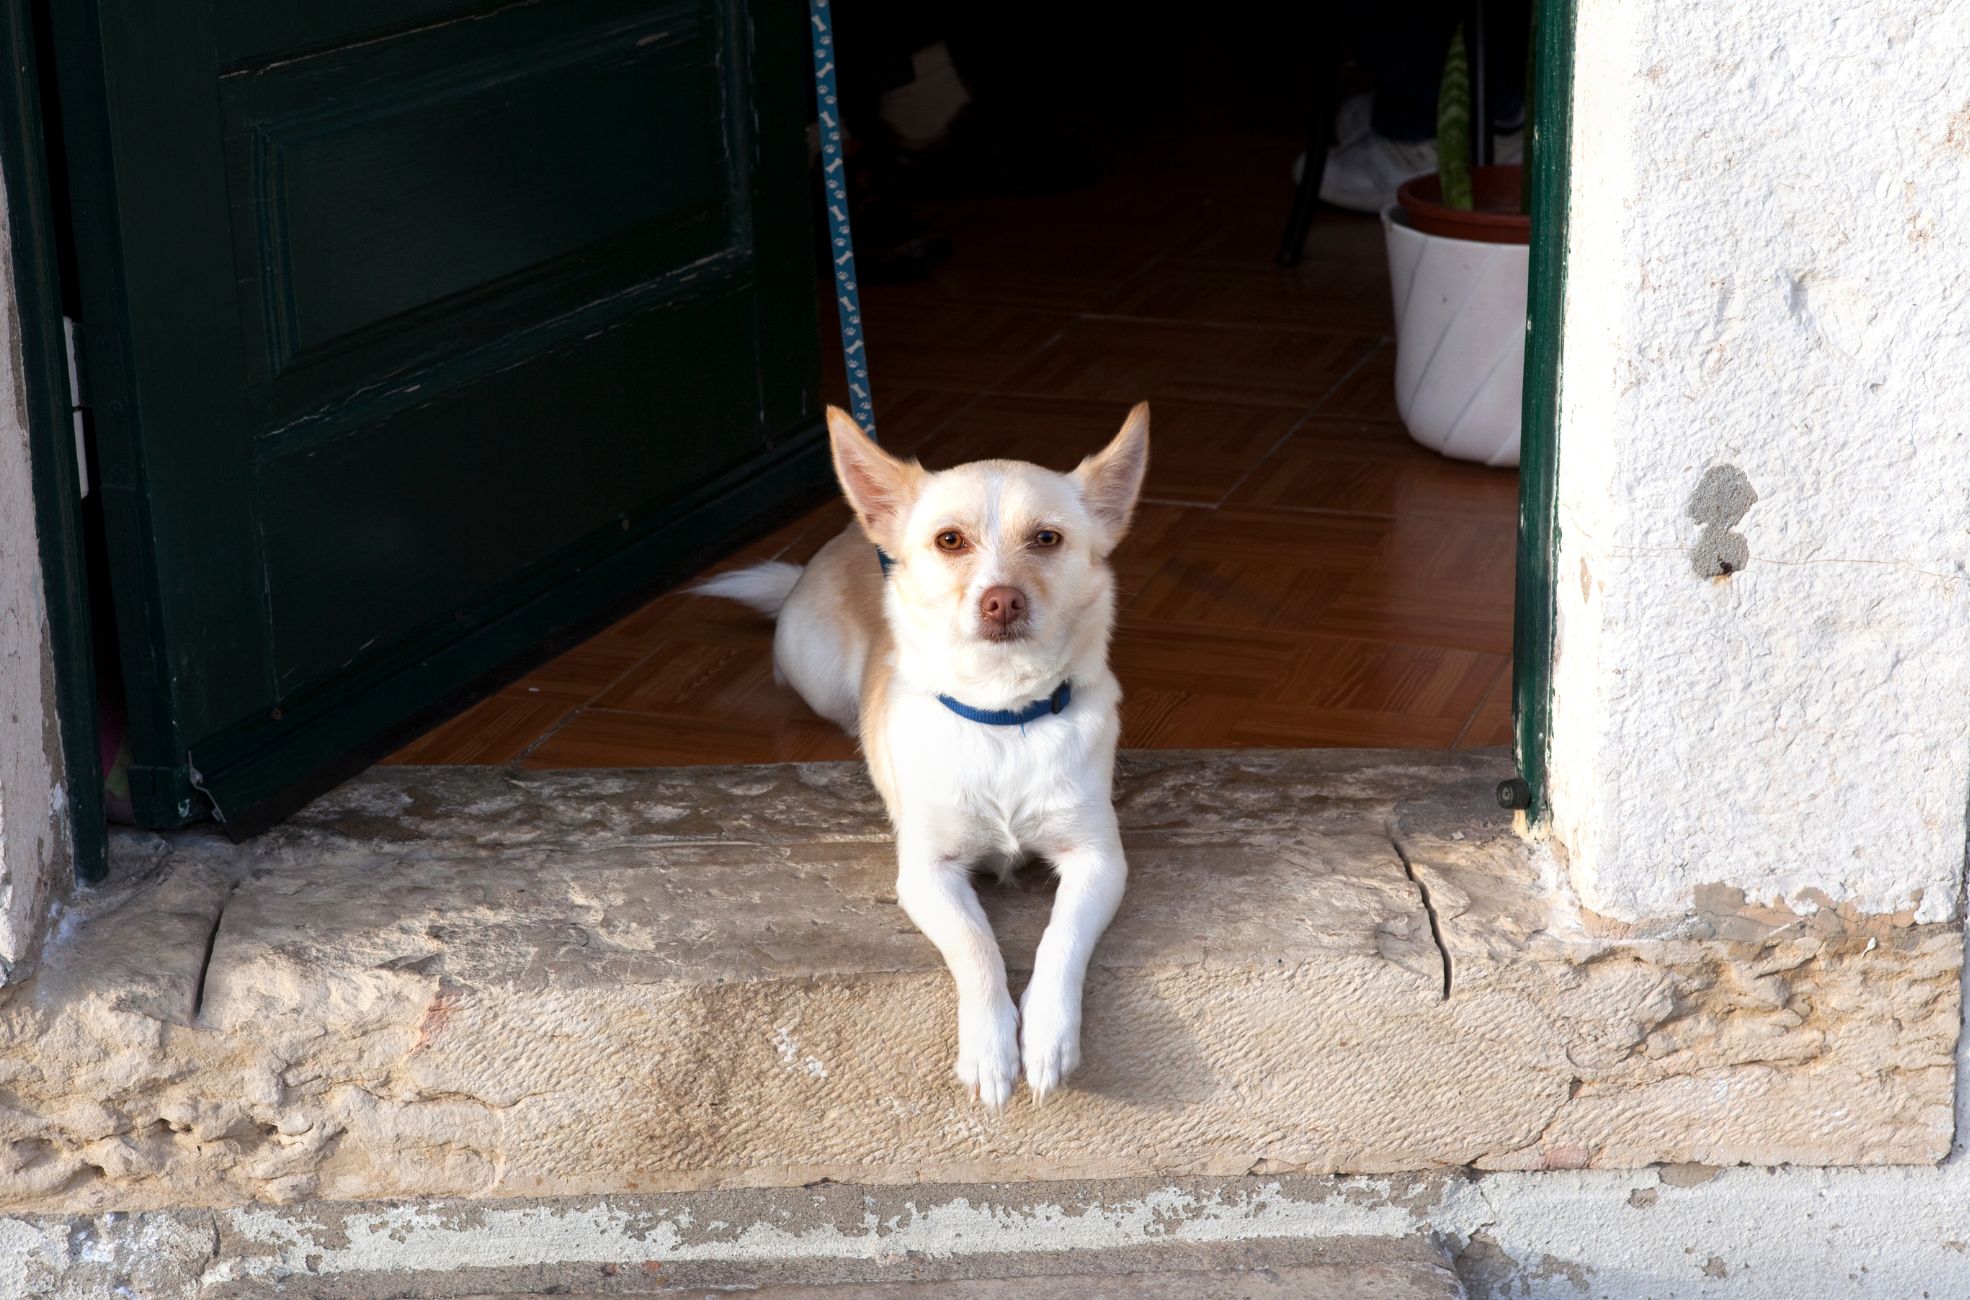 Dog In Doorway